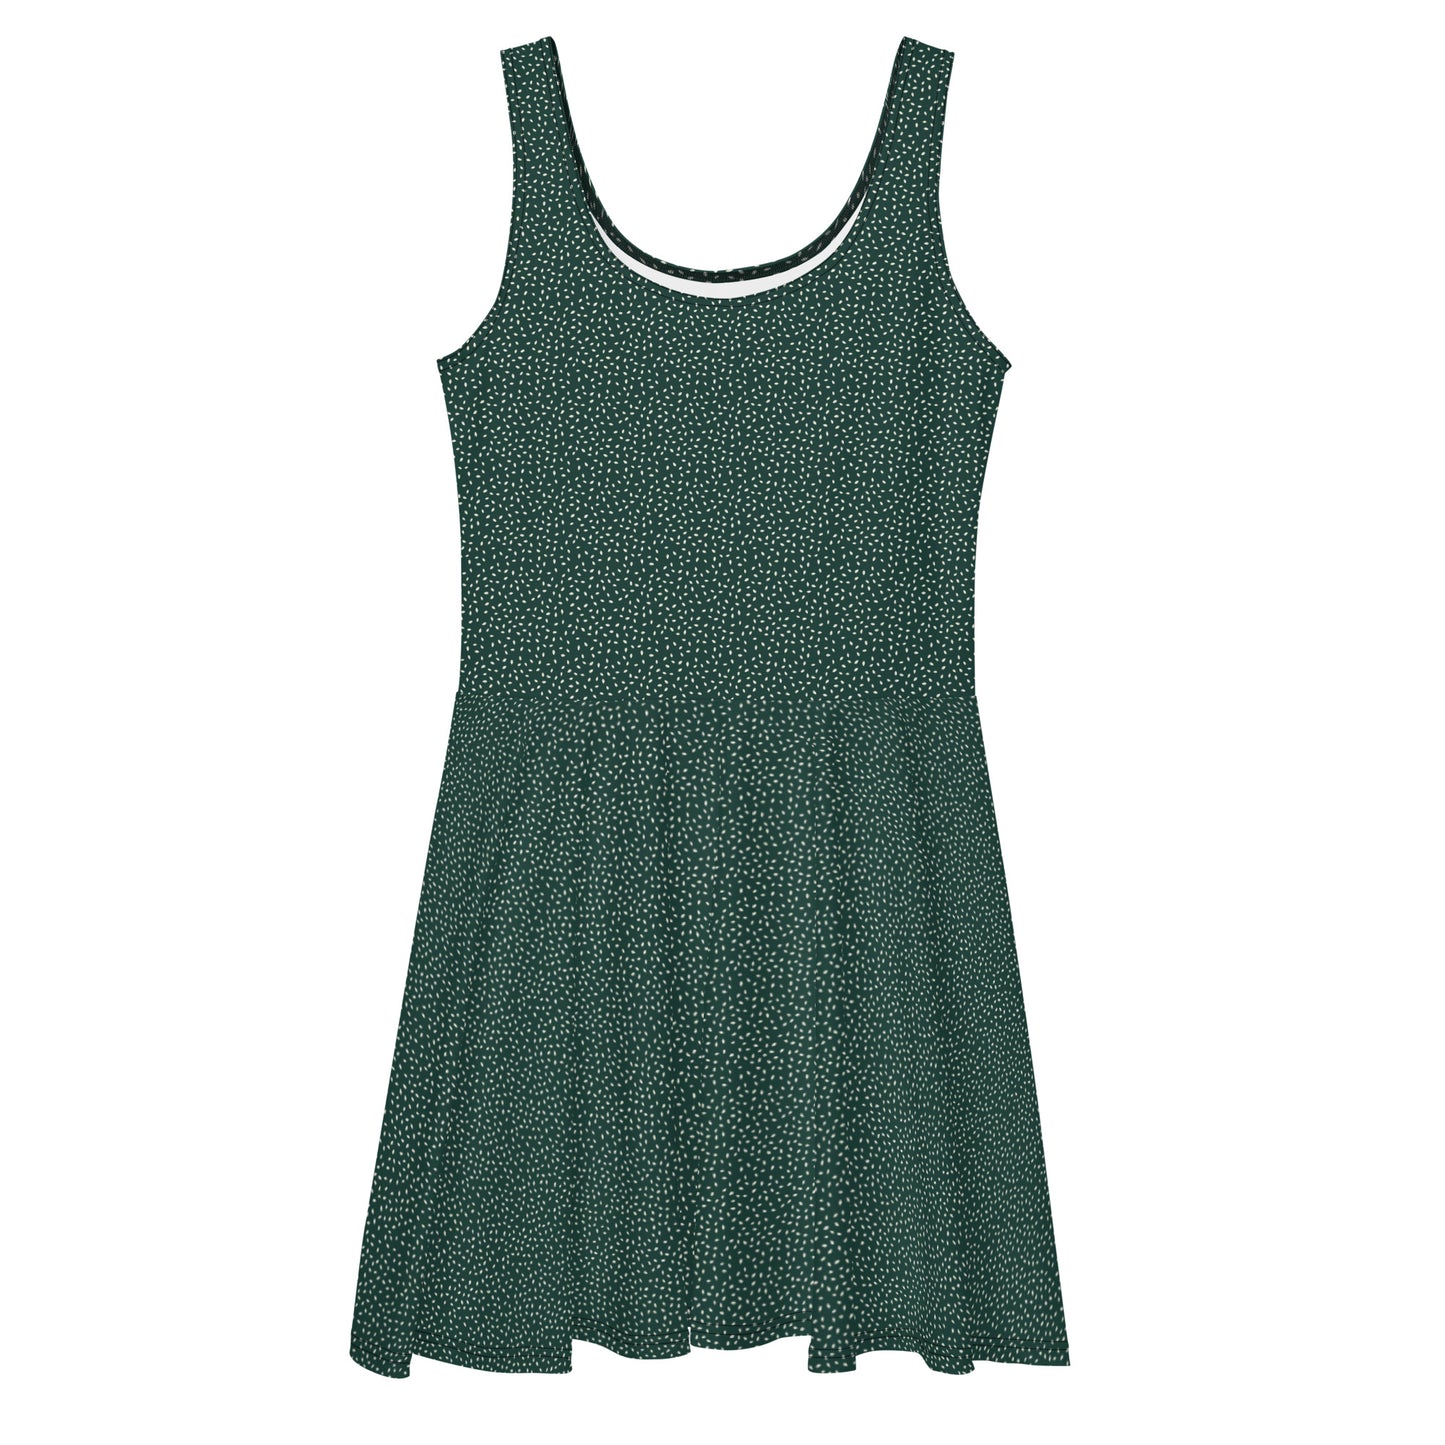 Φόρεμα σε όλο το τύπωμα/Φύλλα-Πράσινο